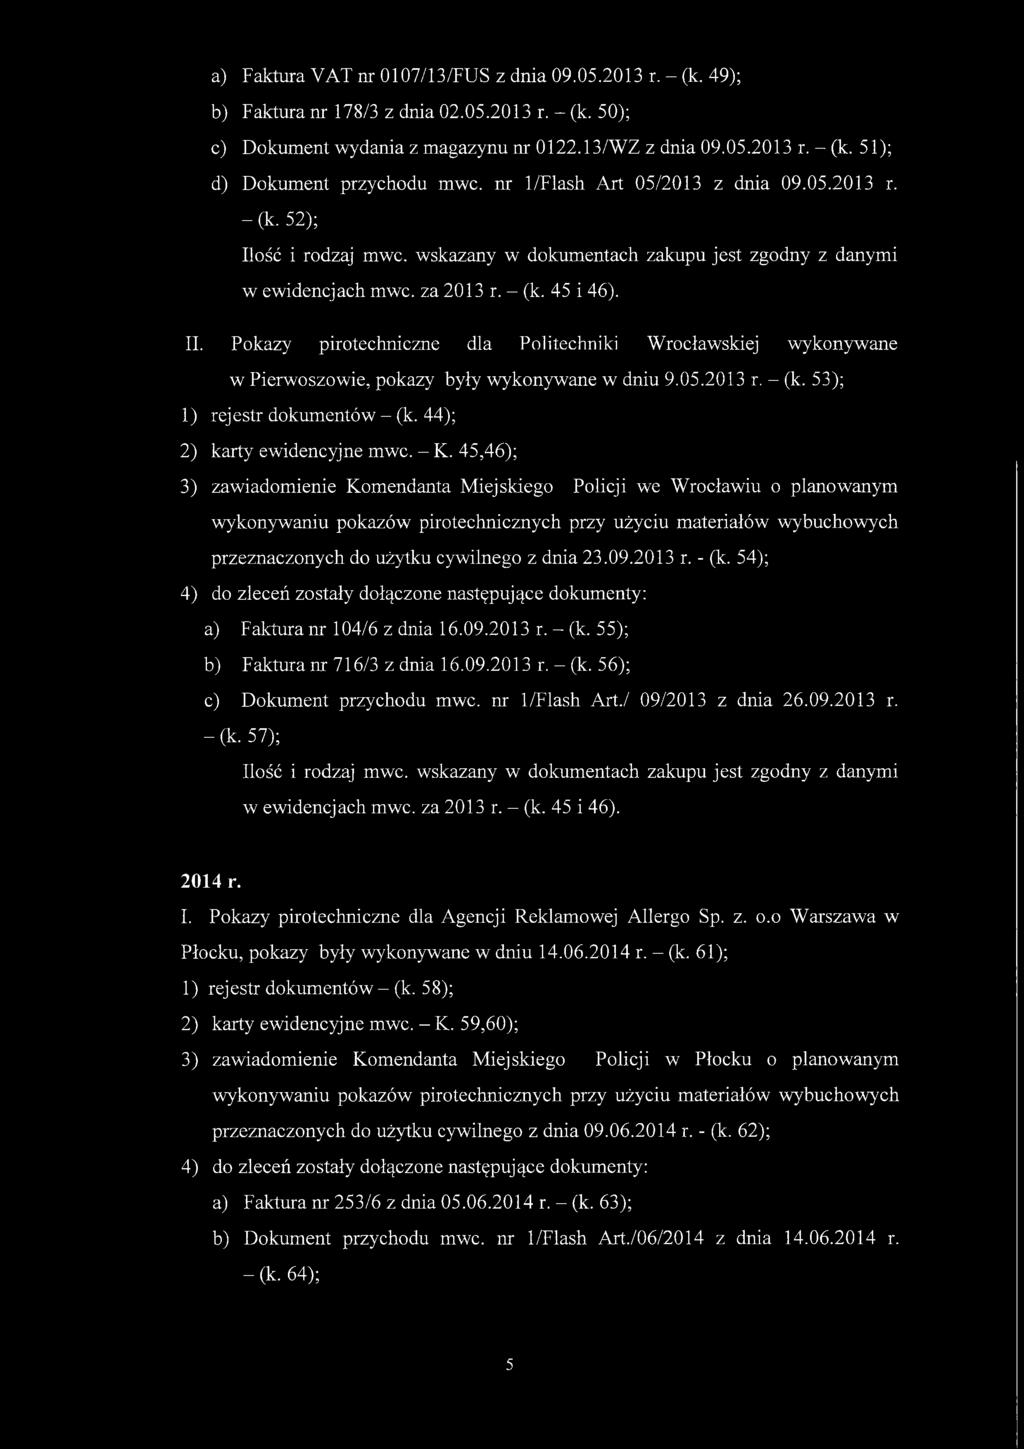 Pokazy pirotechniczne dla Politechniki Wrocławskiej wykonywane w Pierwoszowie, pokazy były wykonywane w dniu 9.05.2013 r. - (k. 53); 1) rejestr dokumentów - (k. 44); 2) karty ewidencyjne mwc. - K.